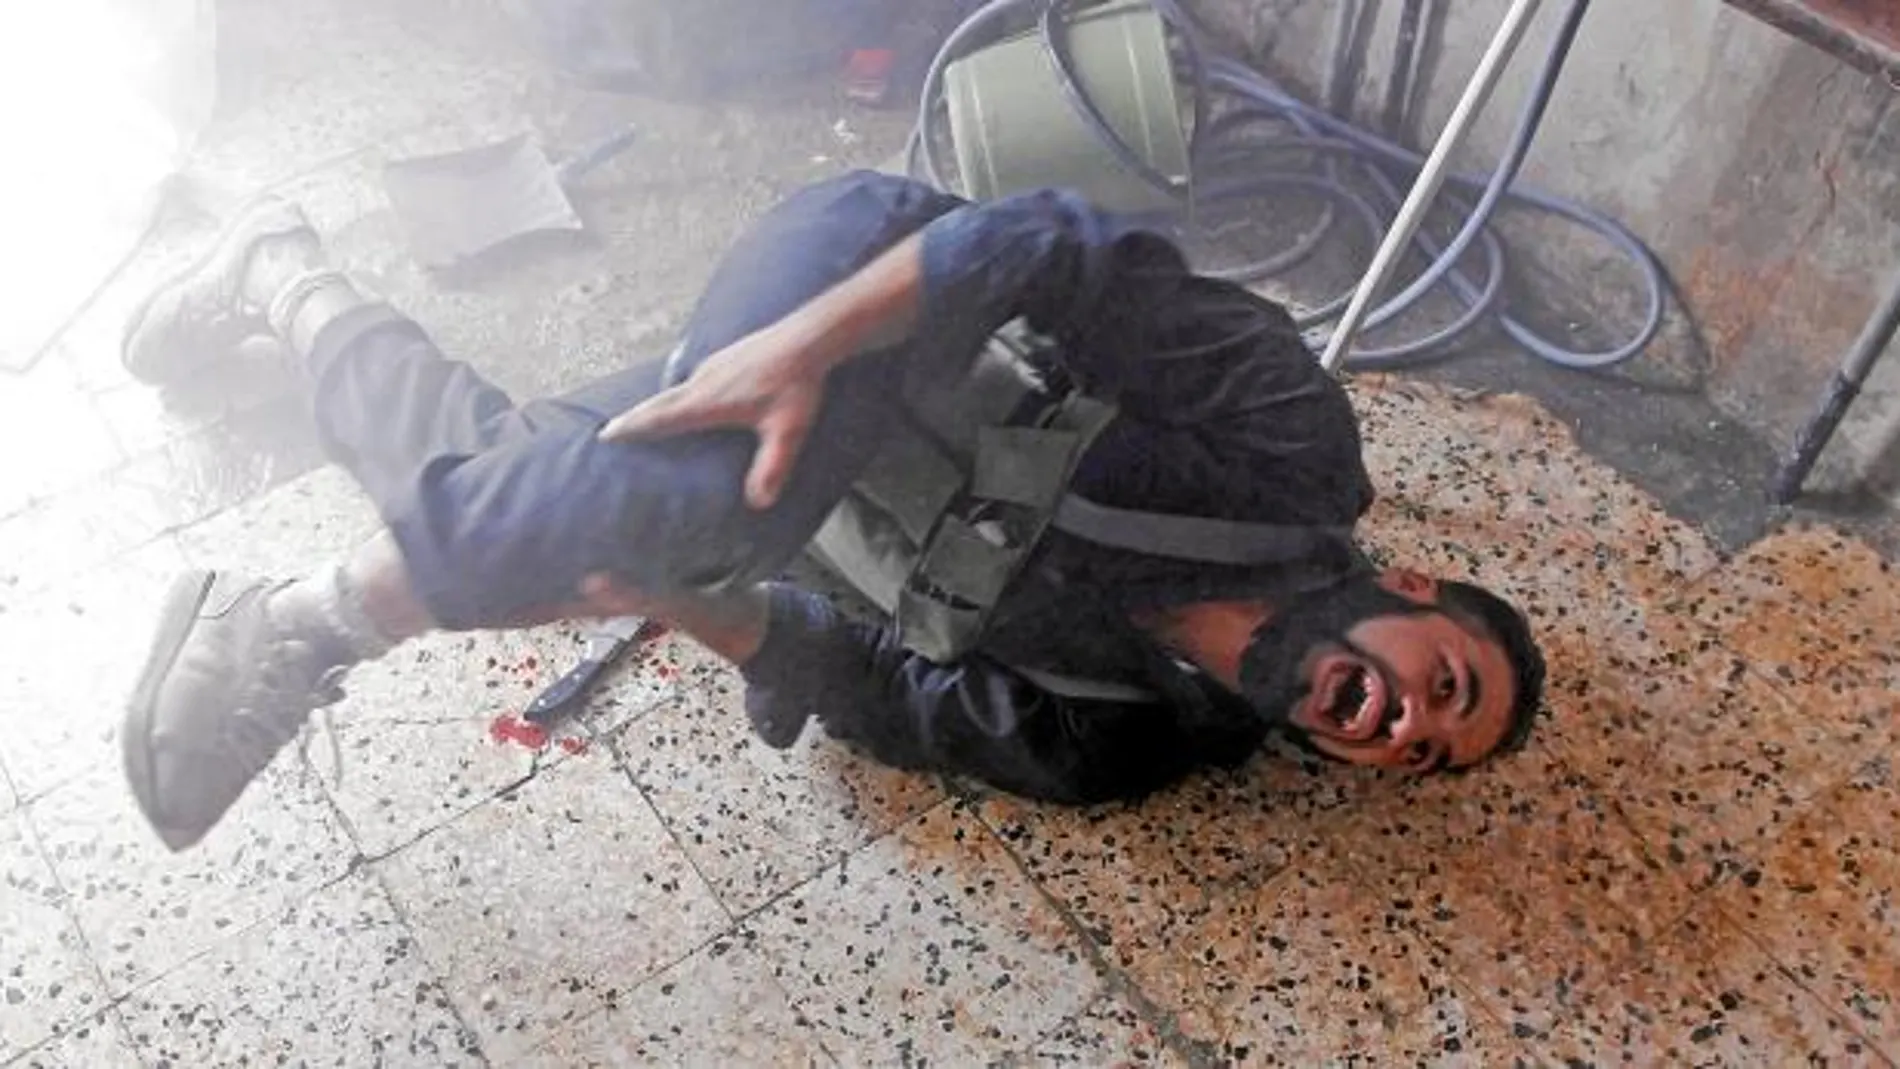 SANGRE Y DOLOR. Un rebelde sirio grita tras ser herido en los combates de ayer en la ciudad de Alepo